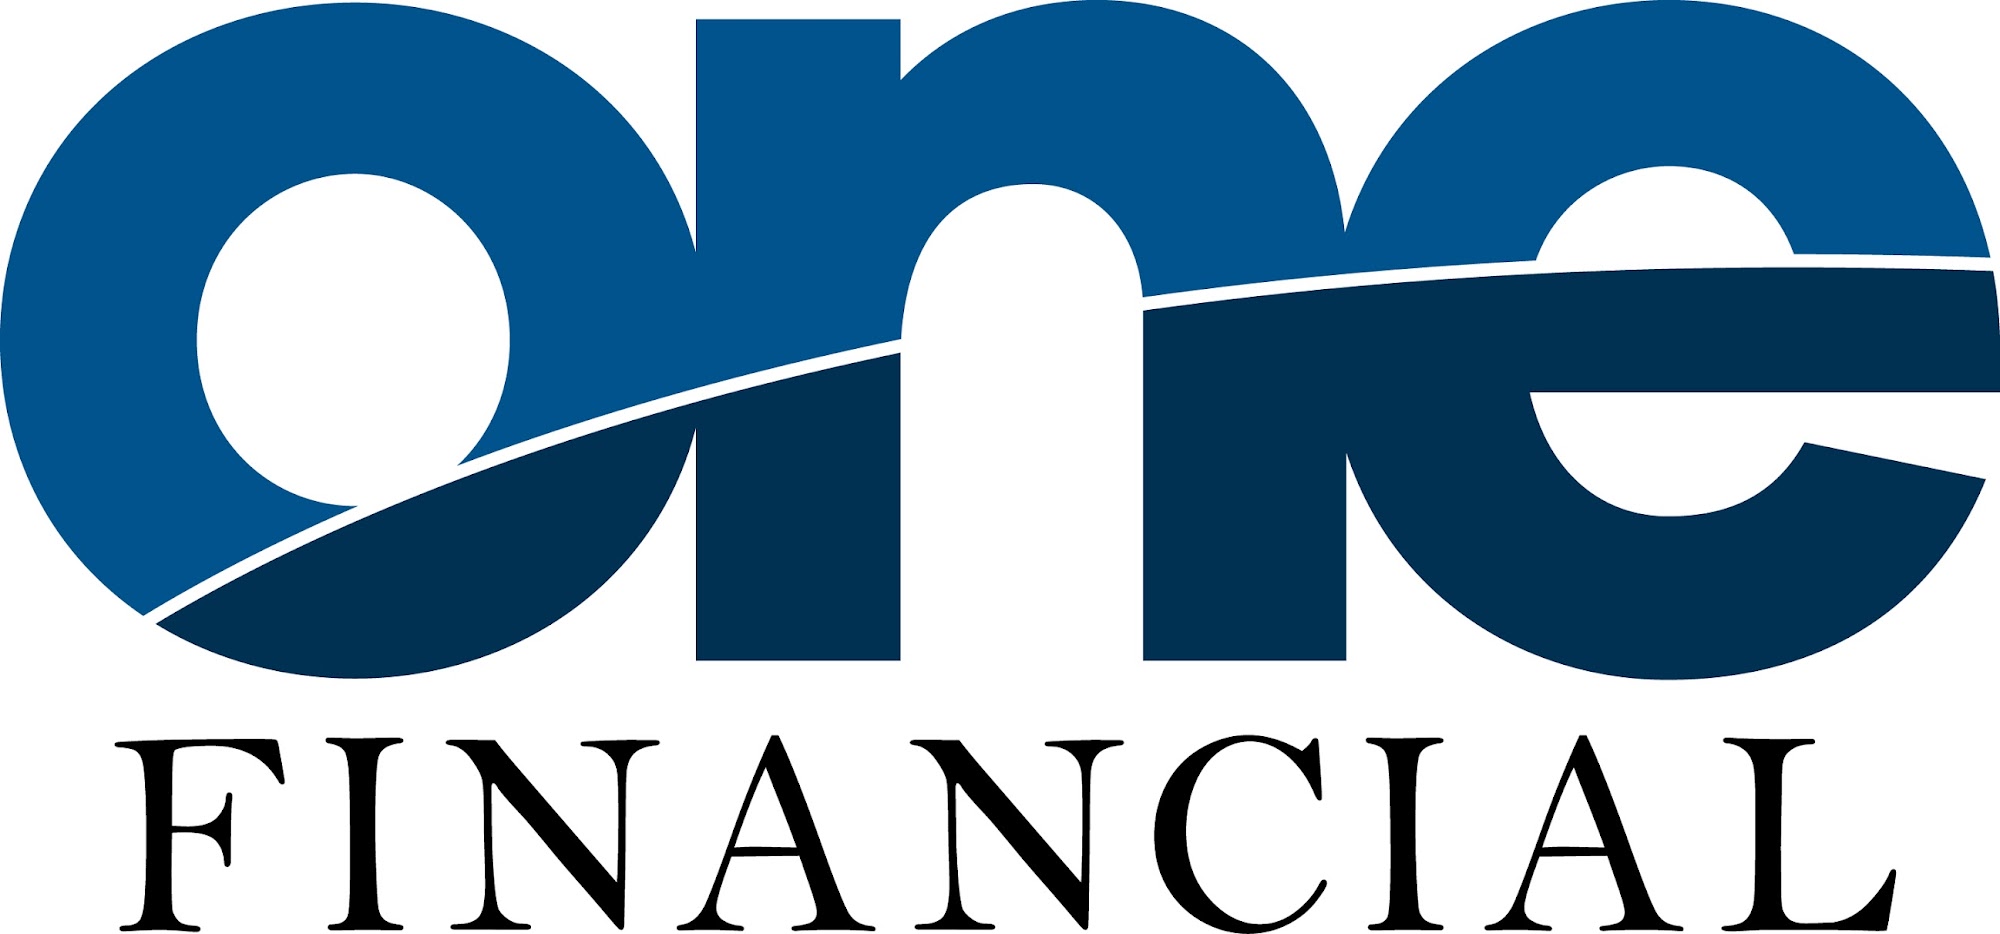 One Financial LLC